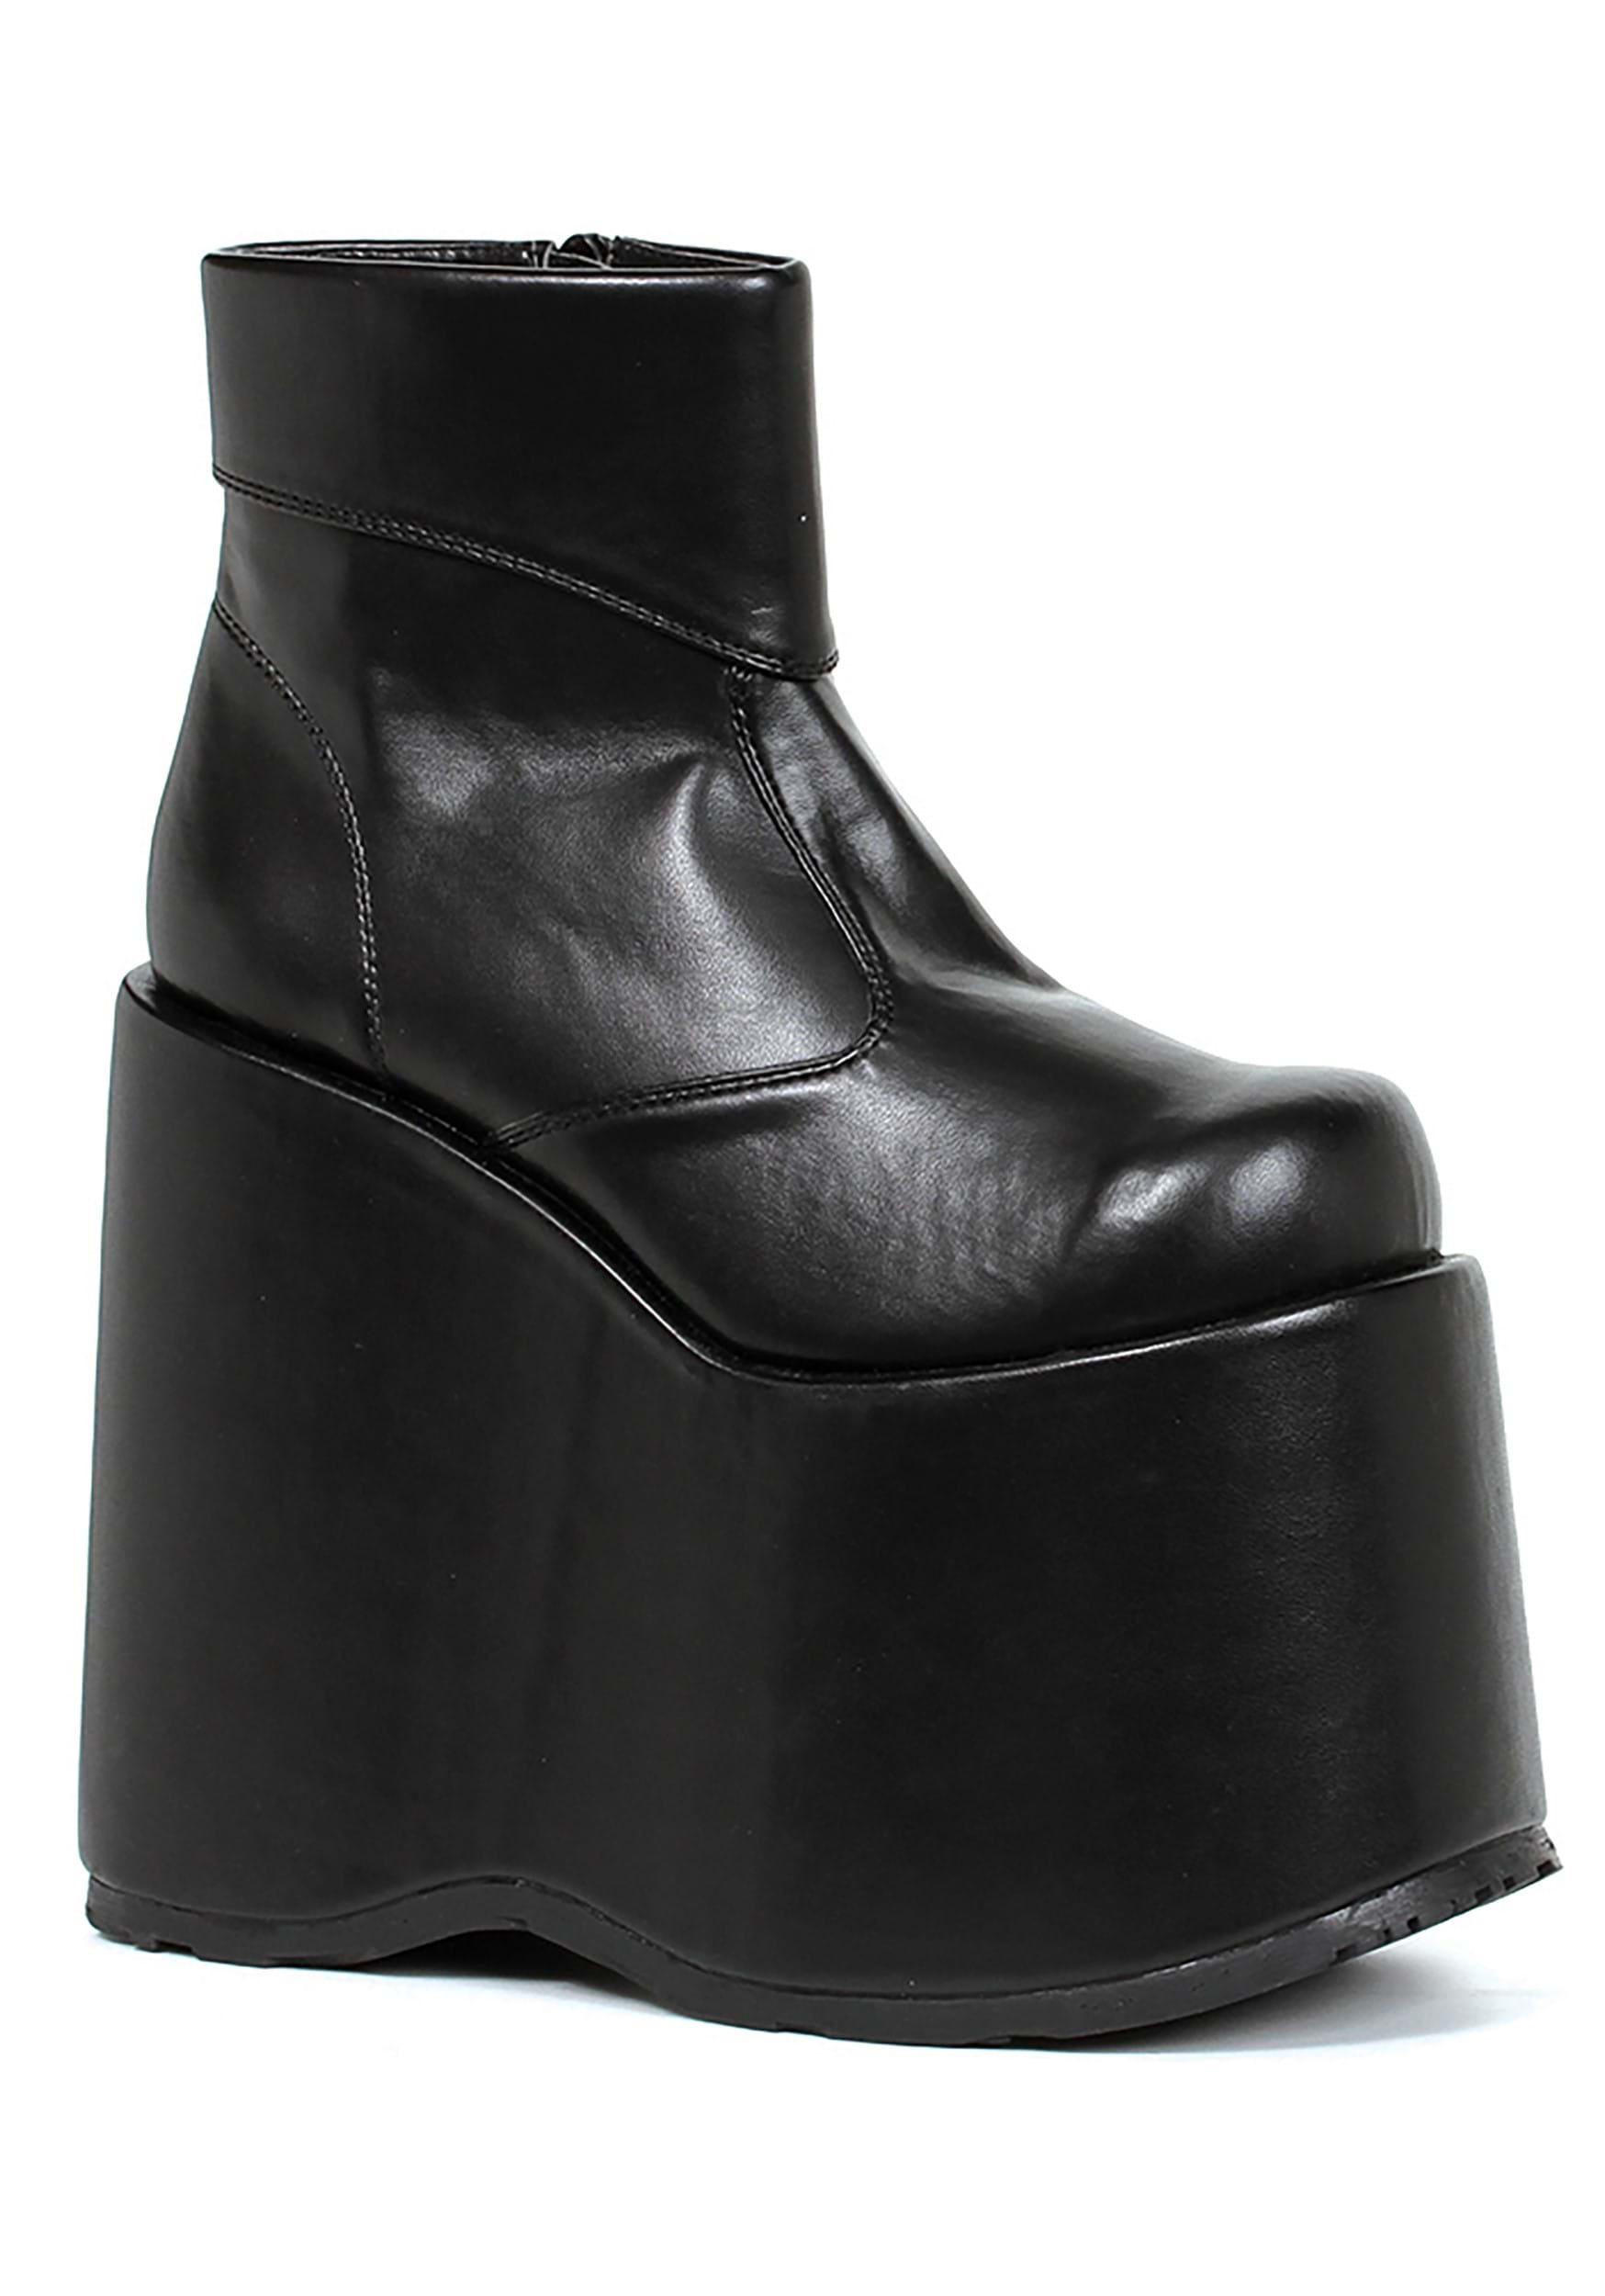 Image of Black Monster Platform Men's Shoes ID EE500FRANKBK-L